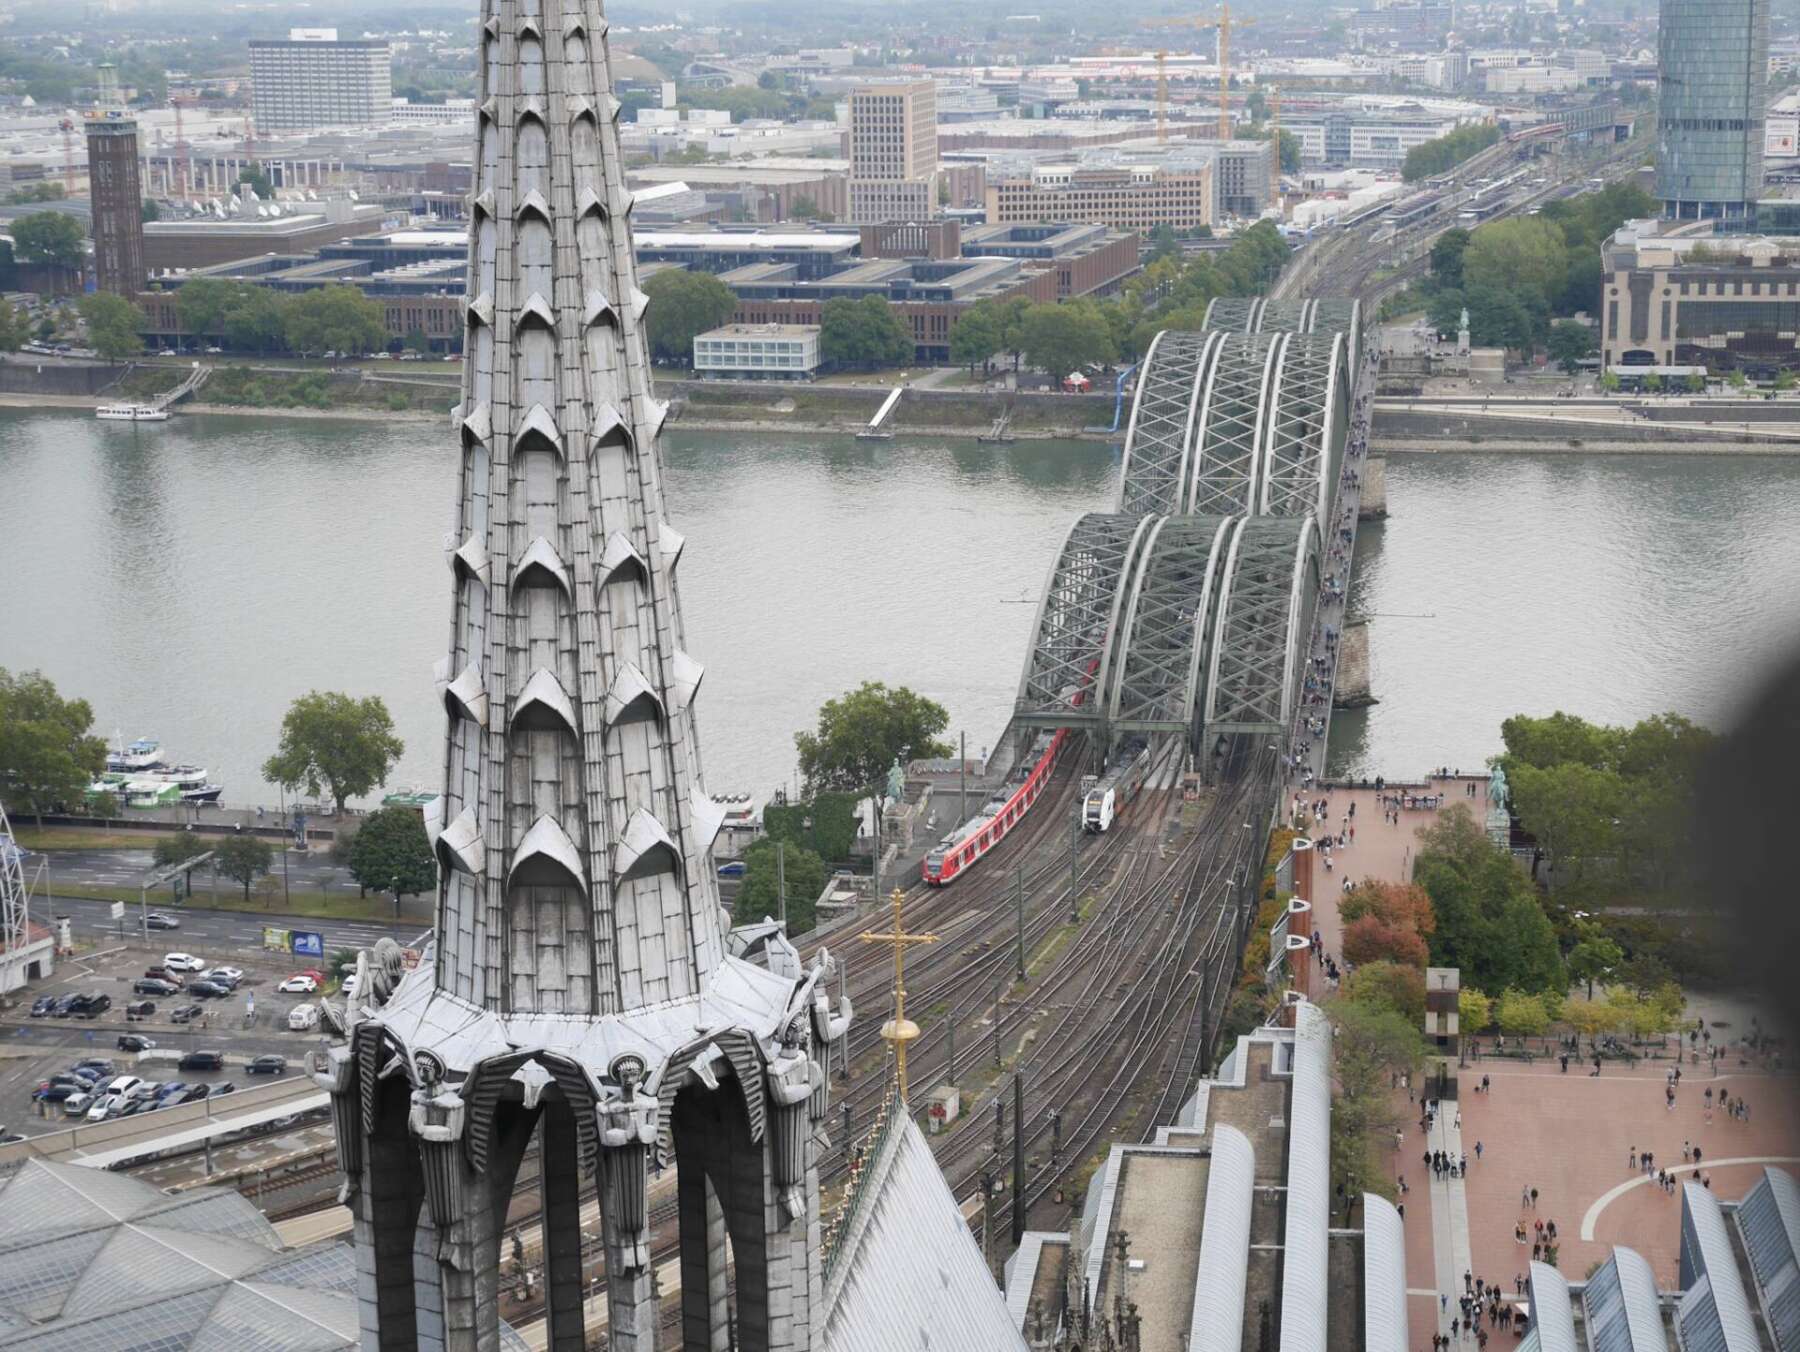 วิวของเมืองโคโลญจากด้านบนหอคอยของมหาวิหารโคโลญ (Cologne Cathedral)